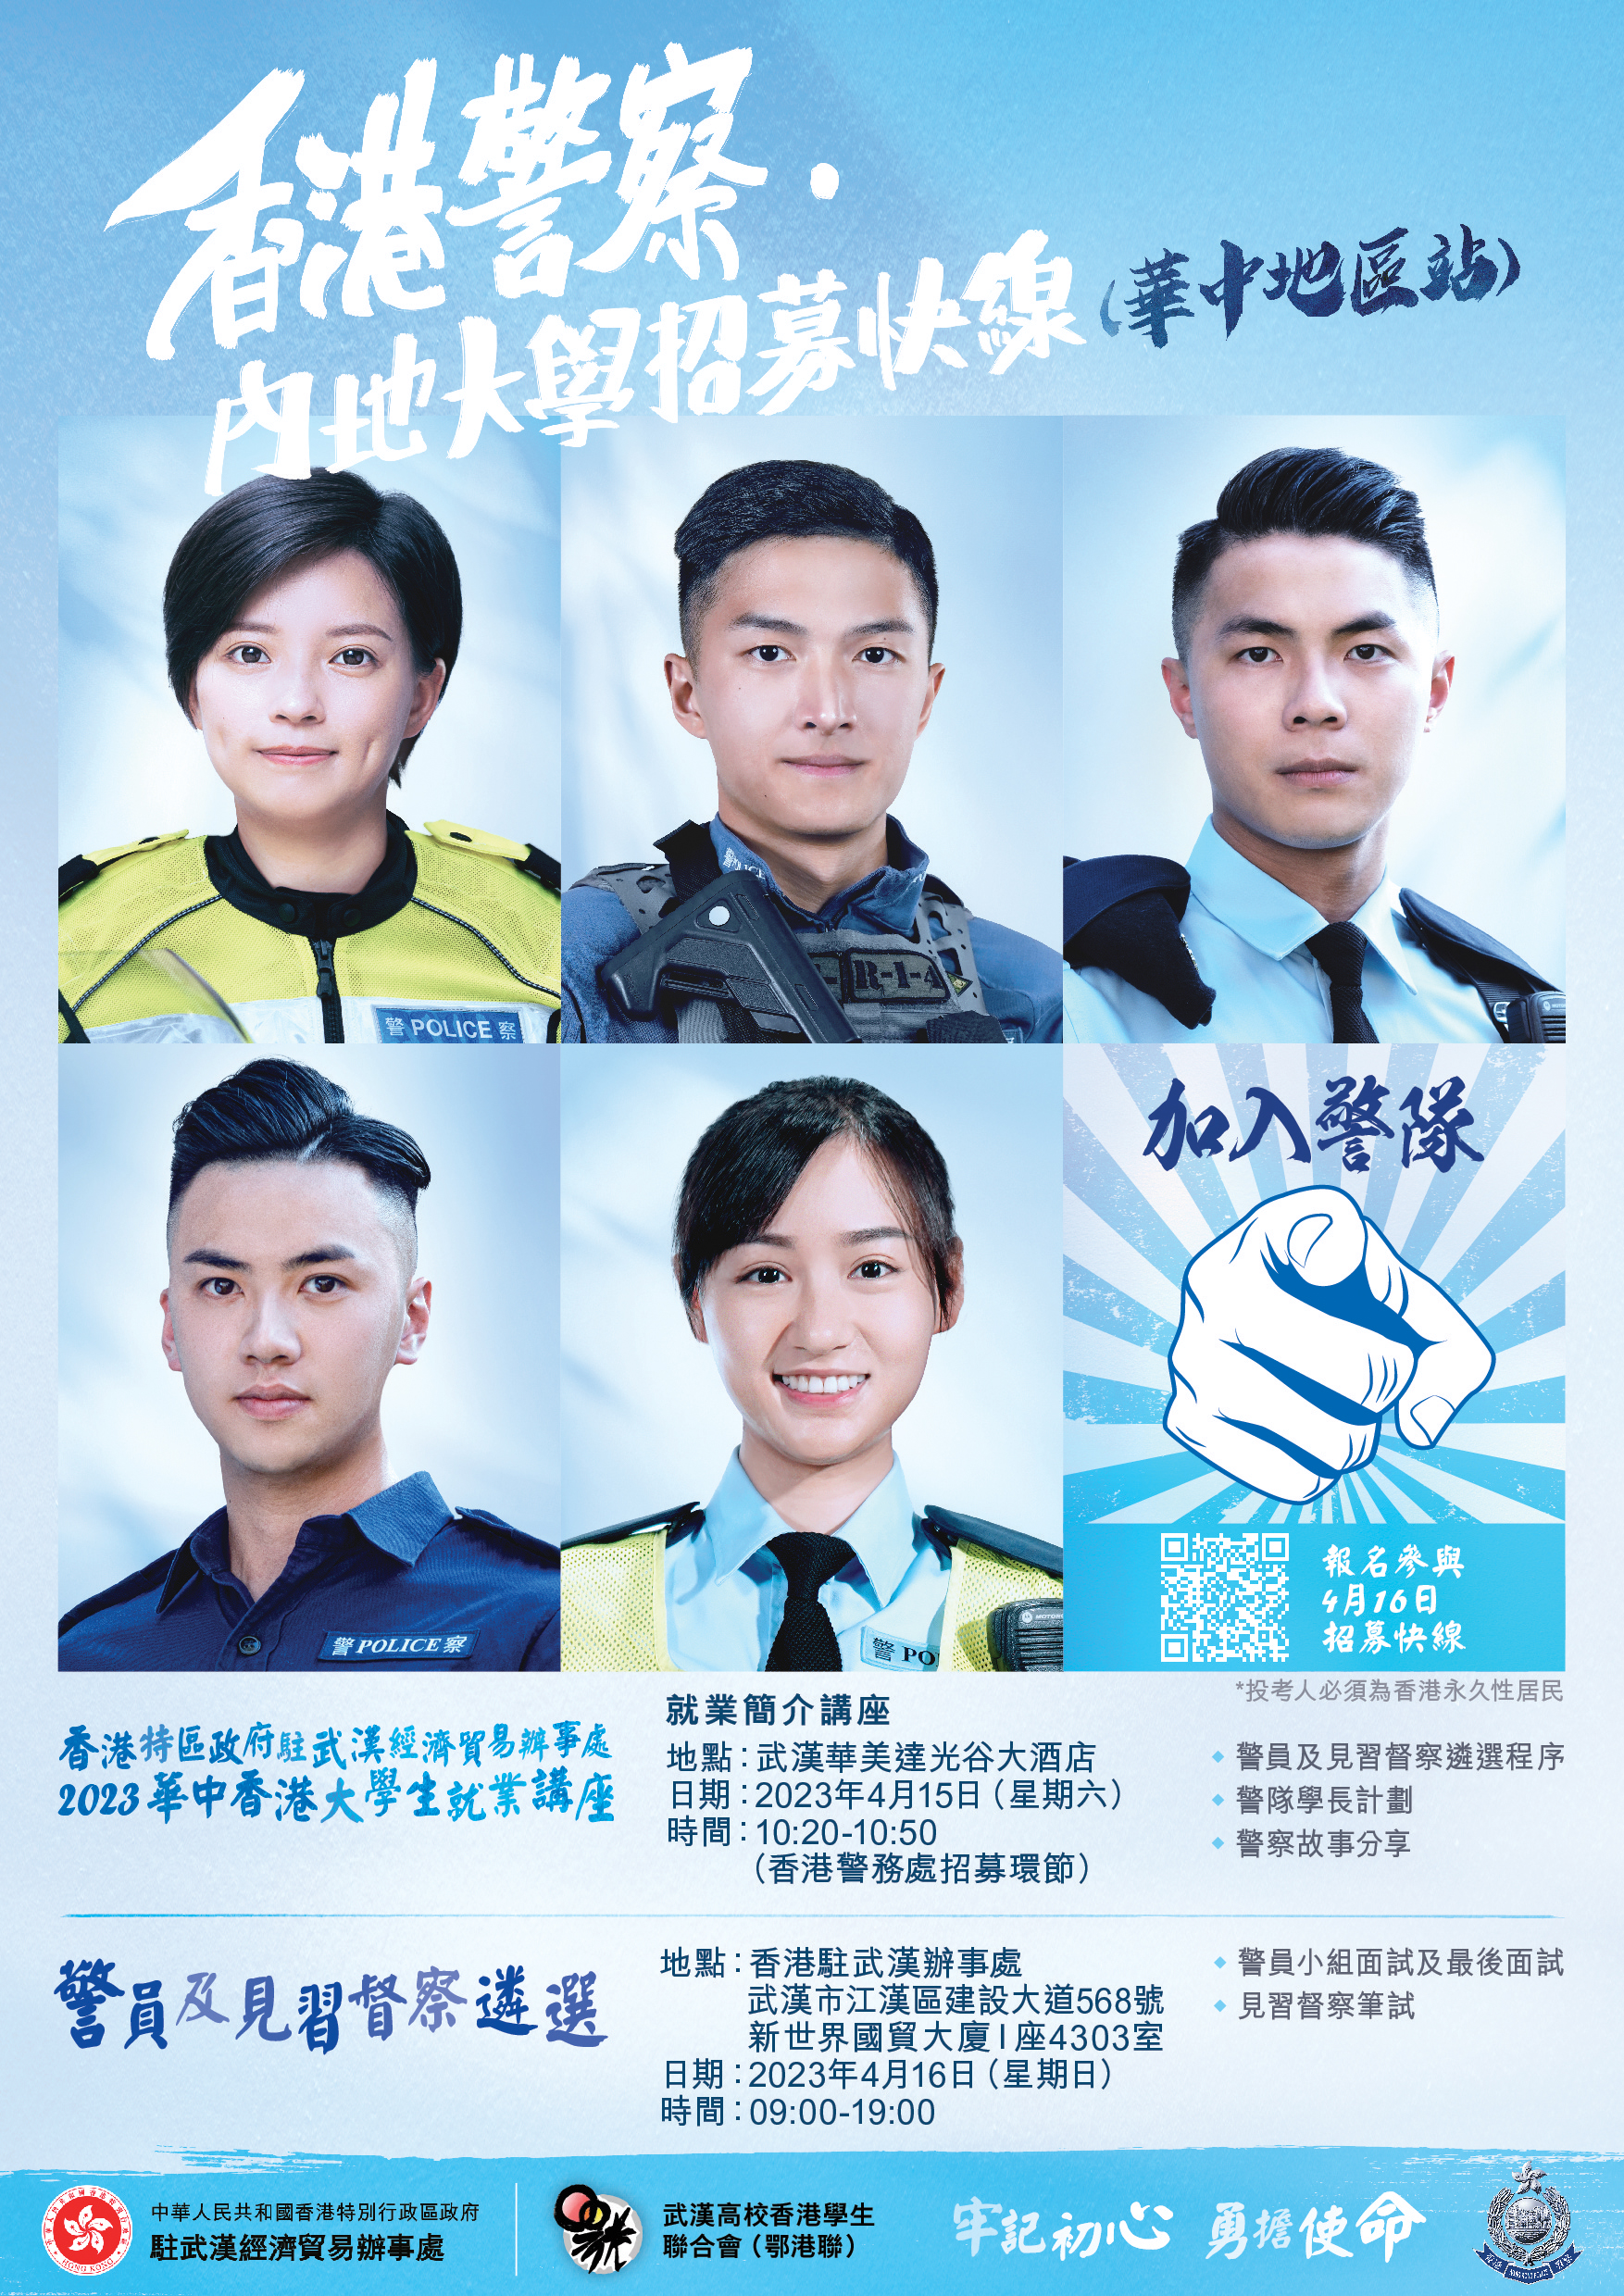 「香港警察·内地大学招募快线」- 华中地区站